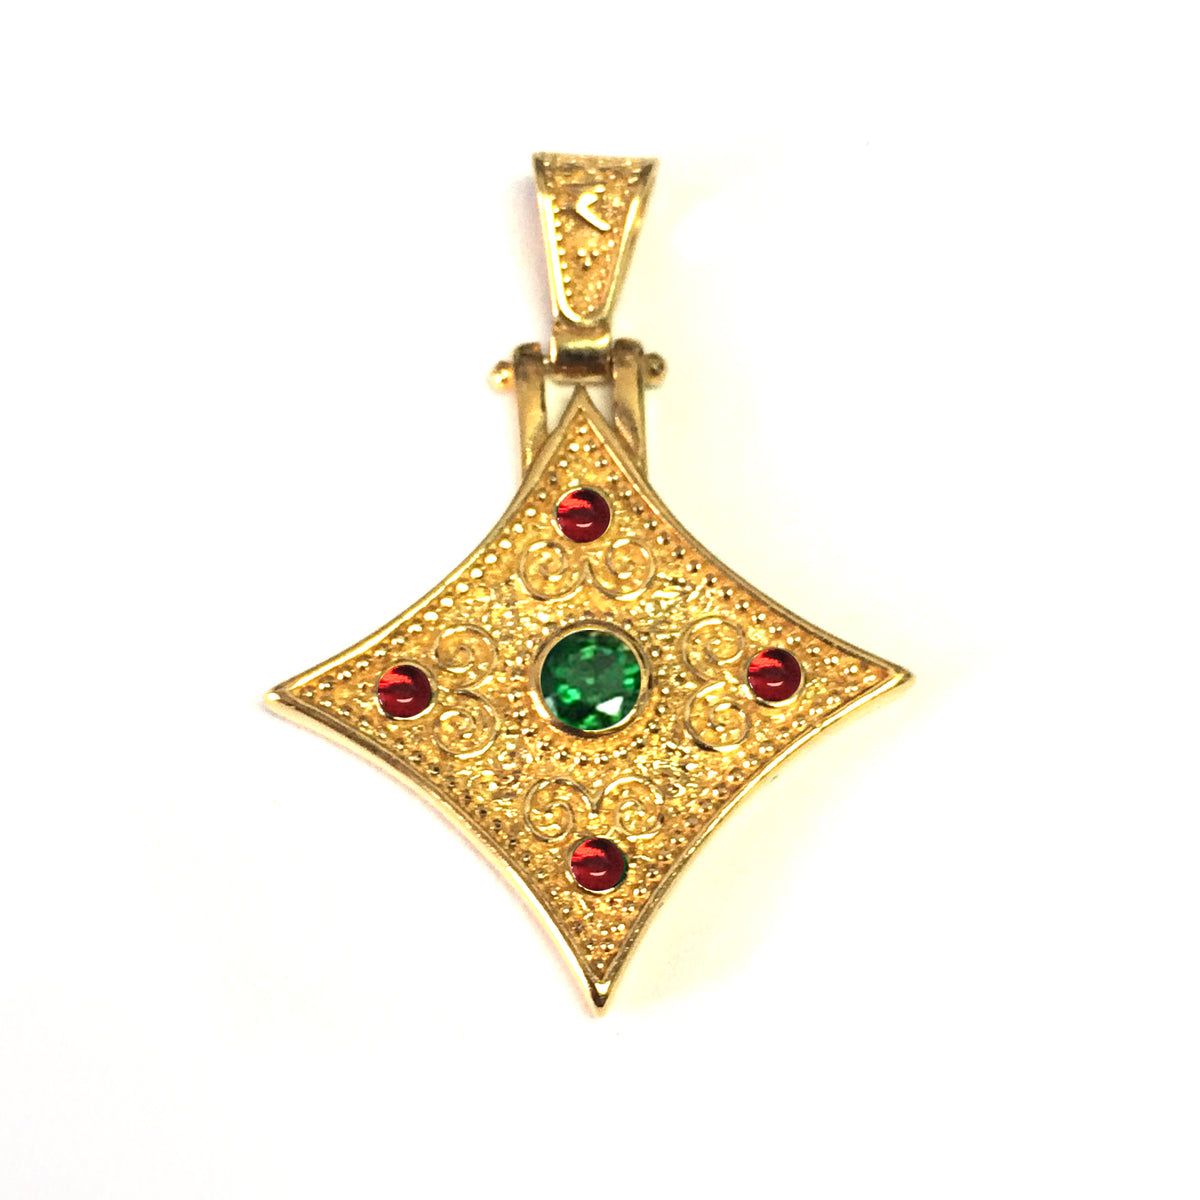 Sterling Sølv 18 Karat Guld Overlay Byzantinsk Rhombus Pendant fine designer smykker til mænd og kvinder